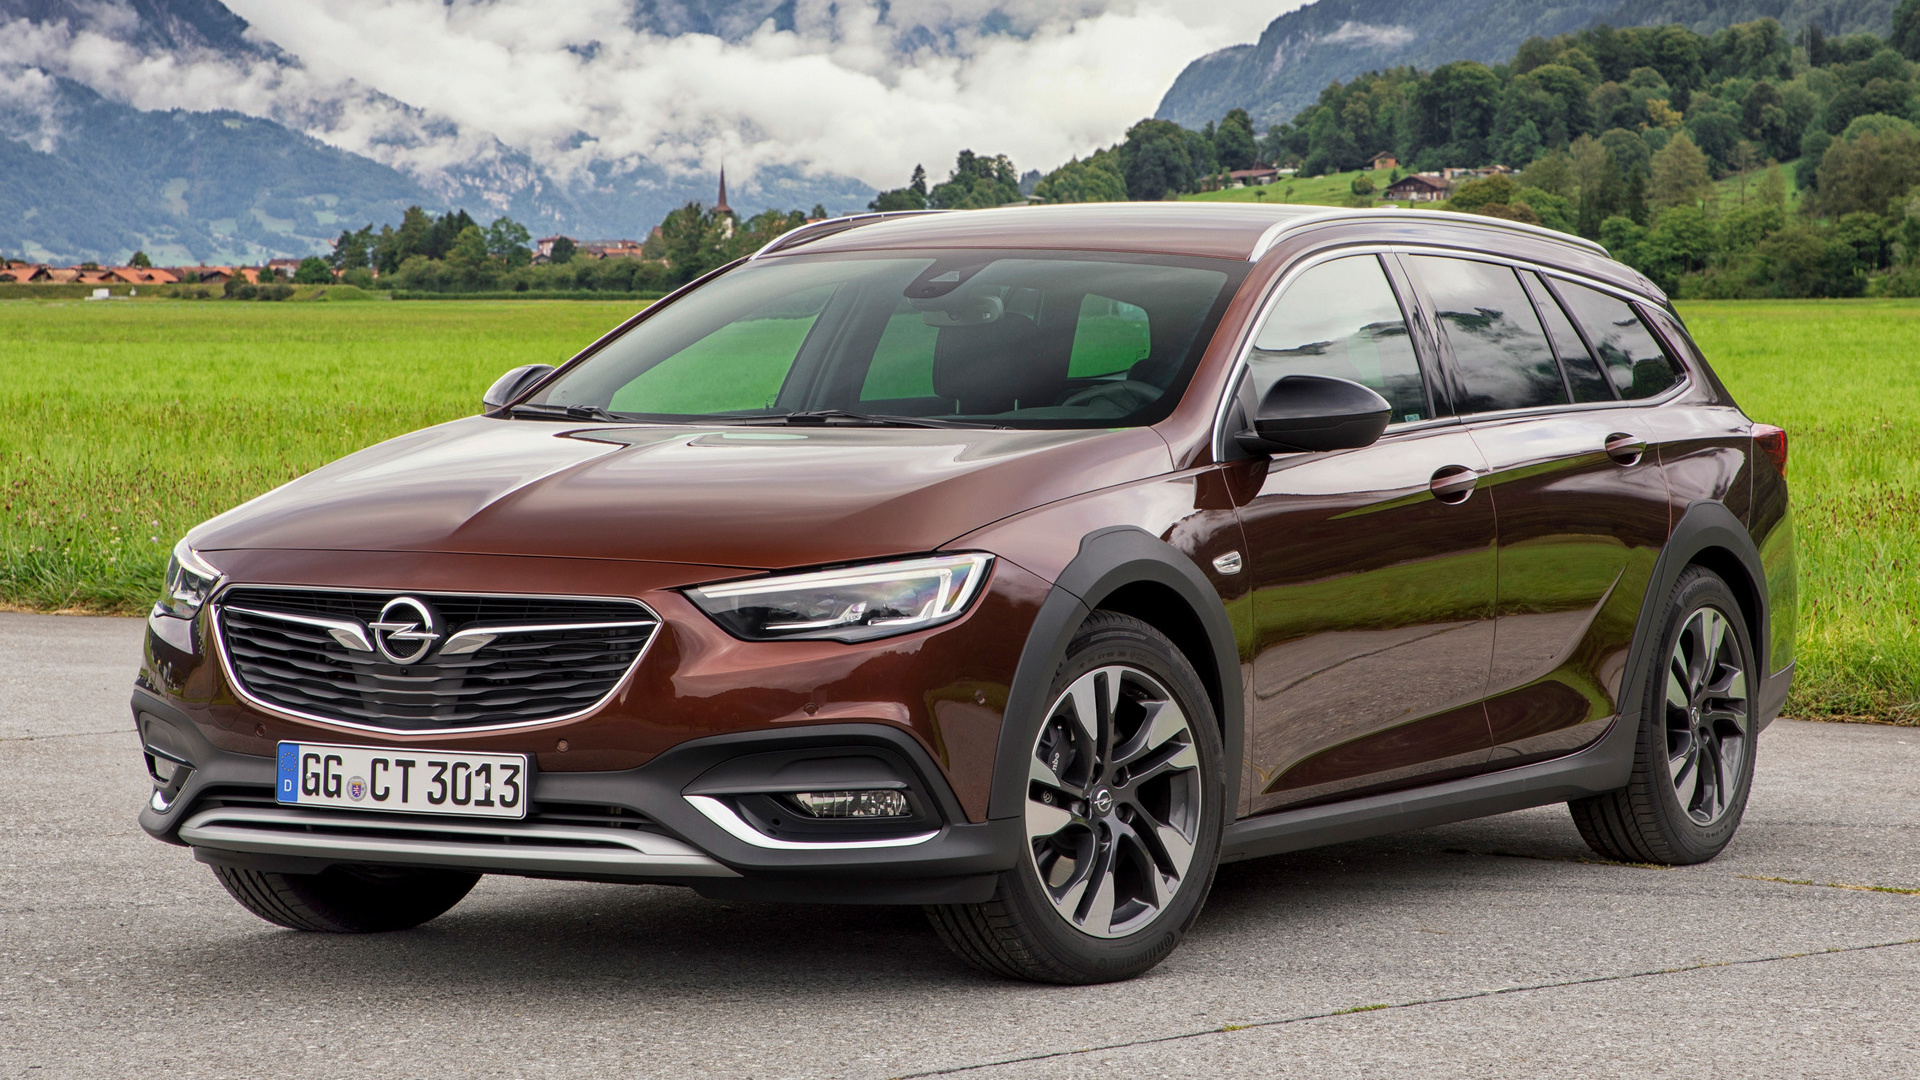 Télécharger des fonds d'écran Opel Insignia Exclusive Country Tourer HD